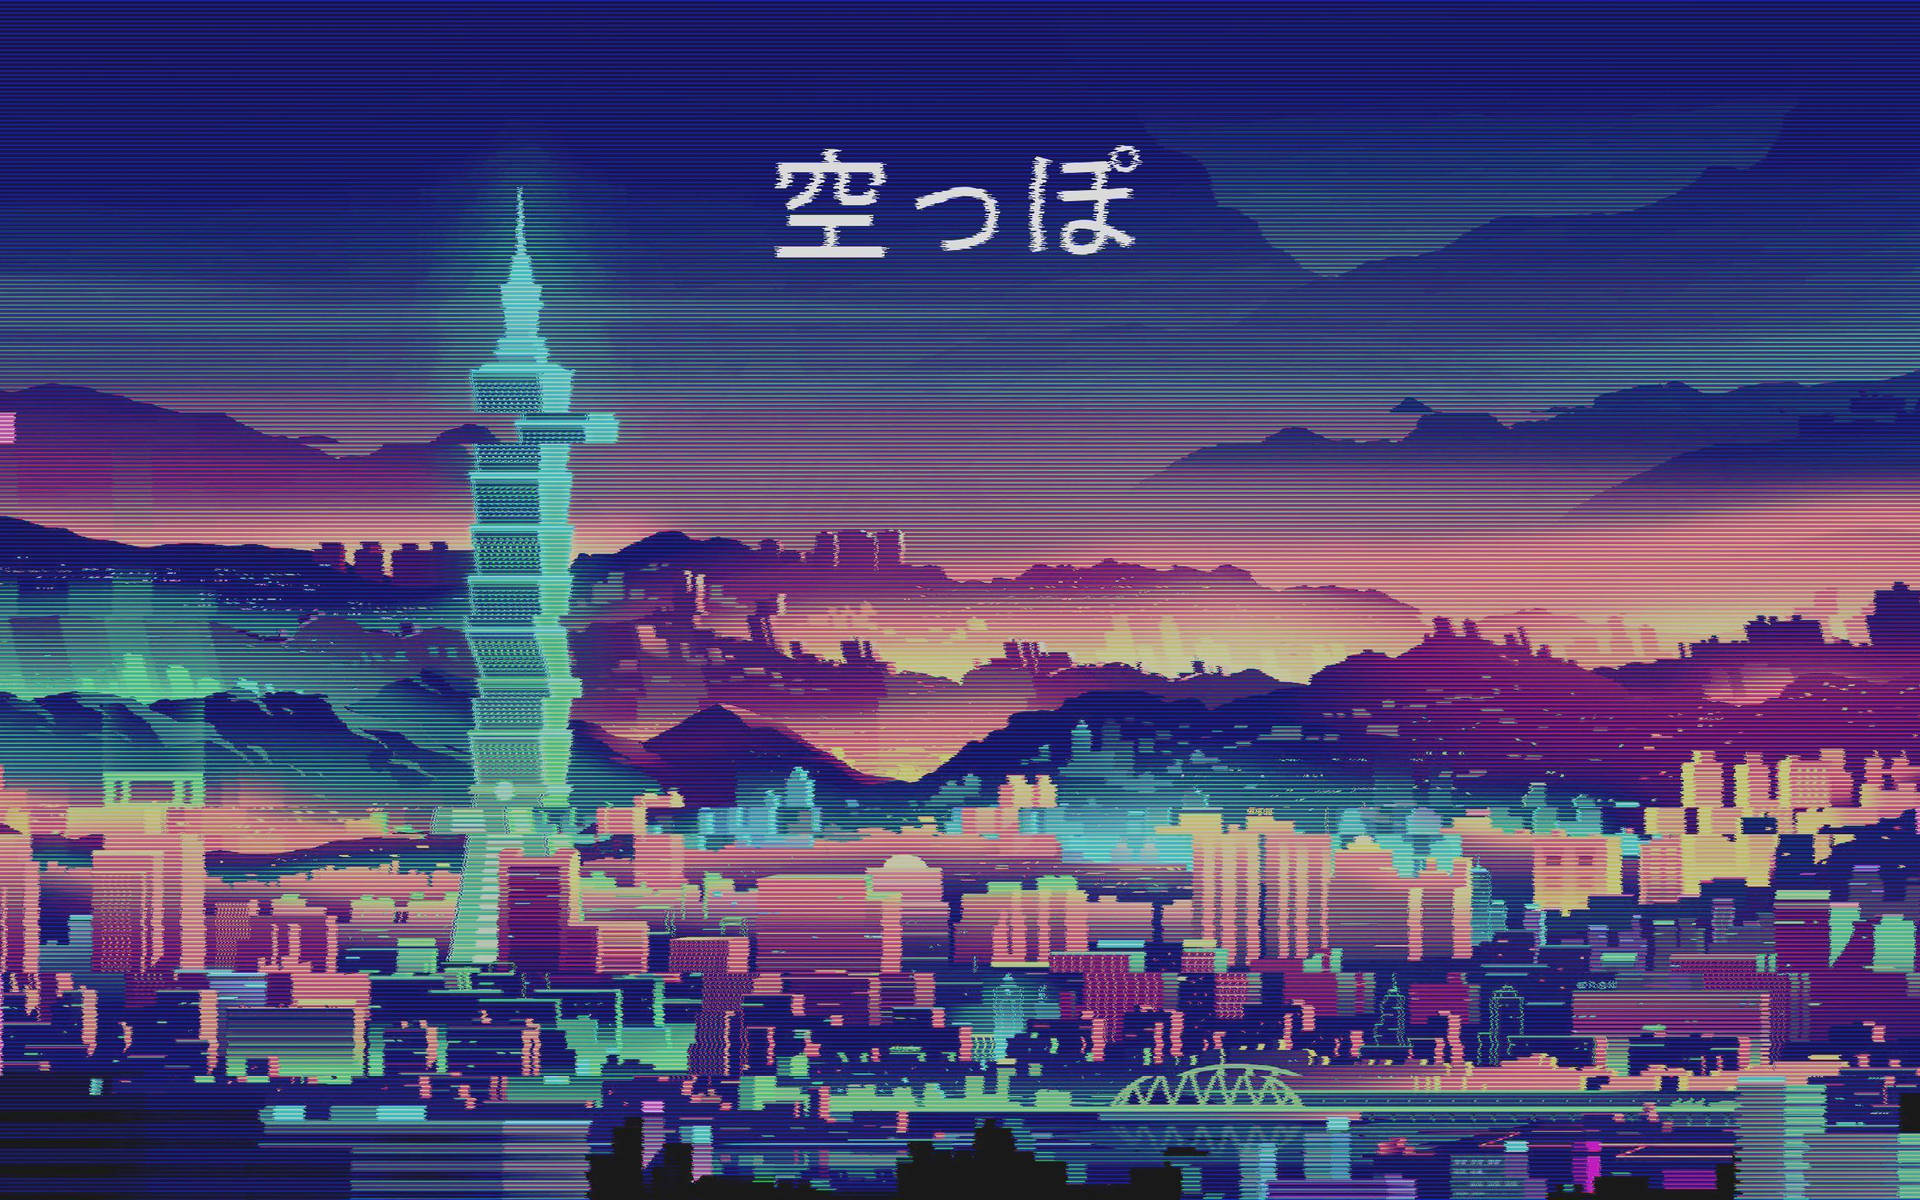 Cute Retro Anime Aesthetic Cityscape Wallpaper